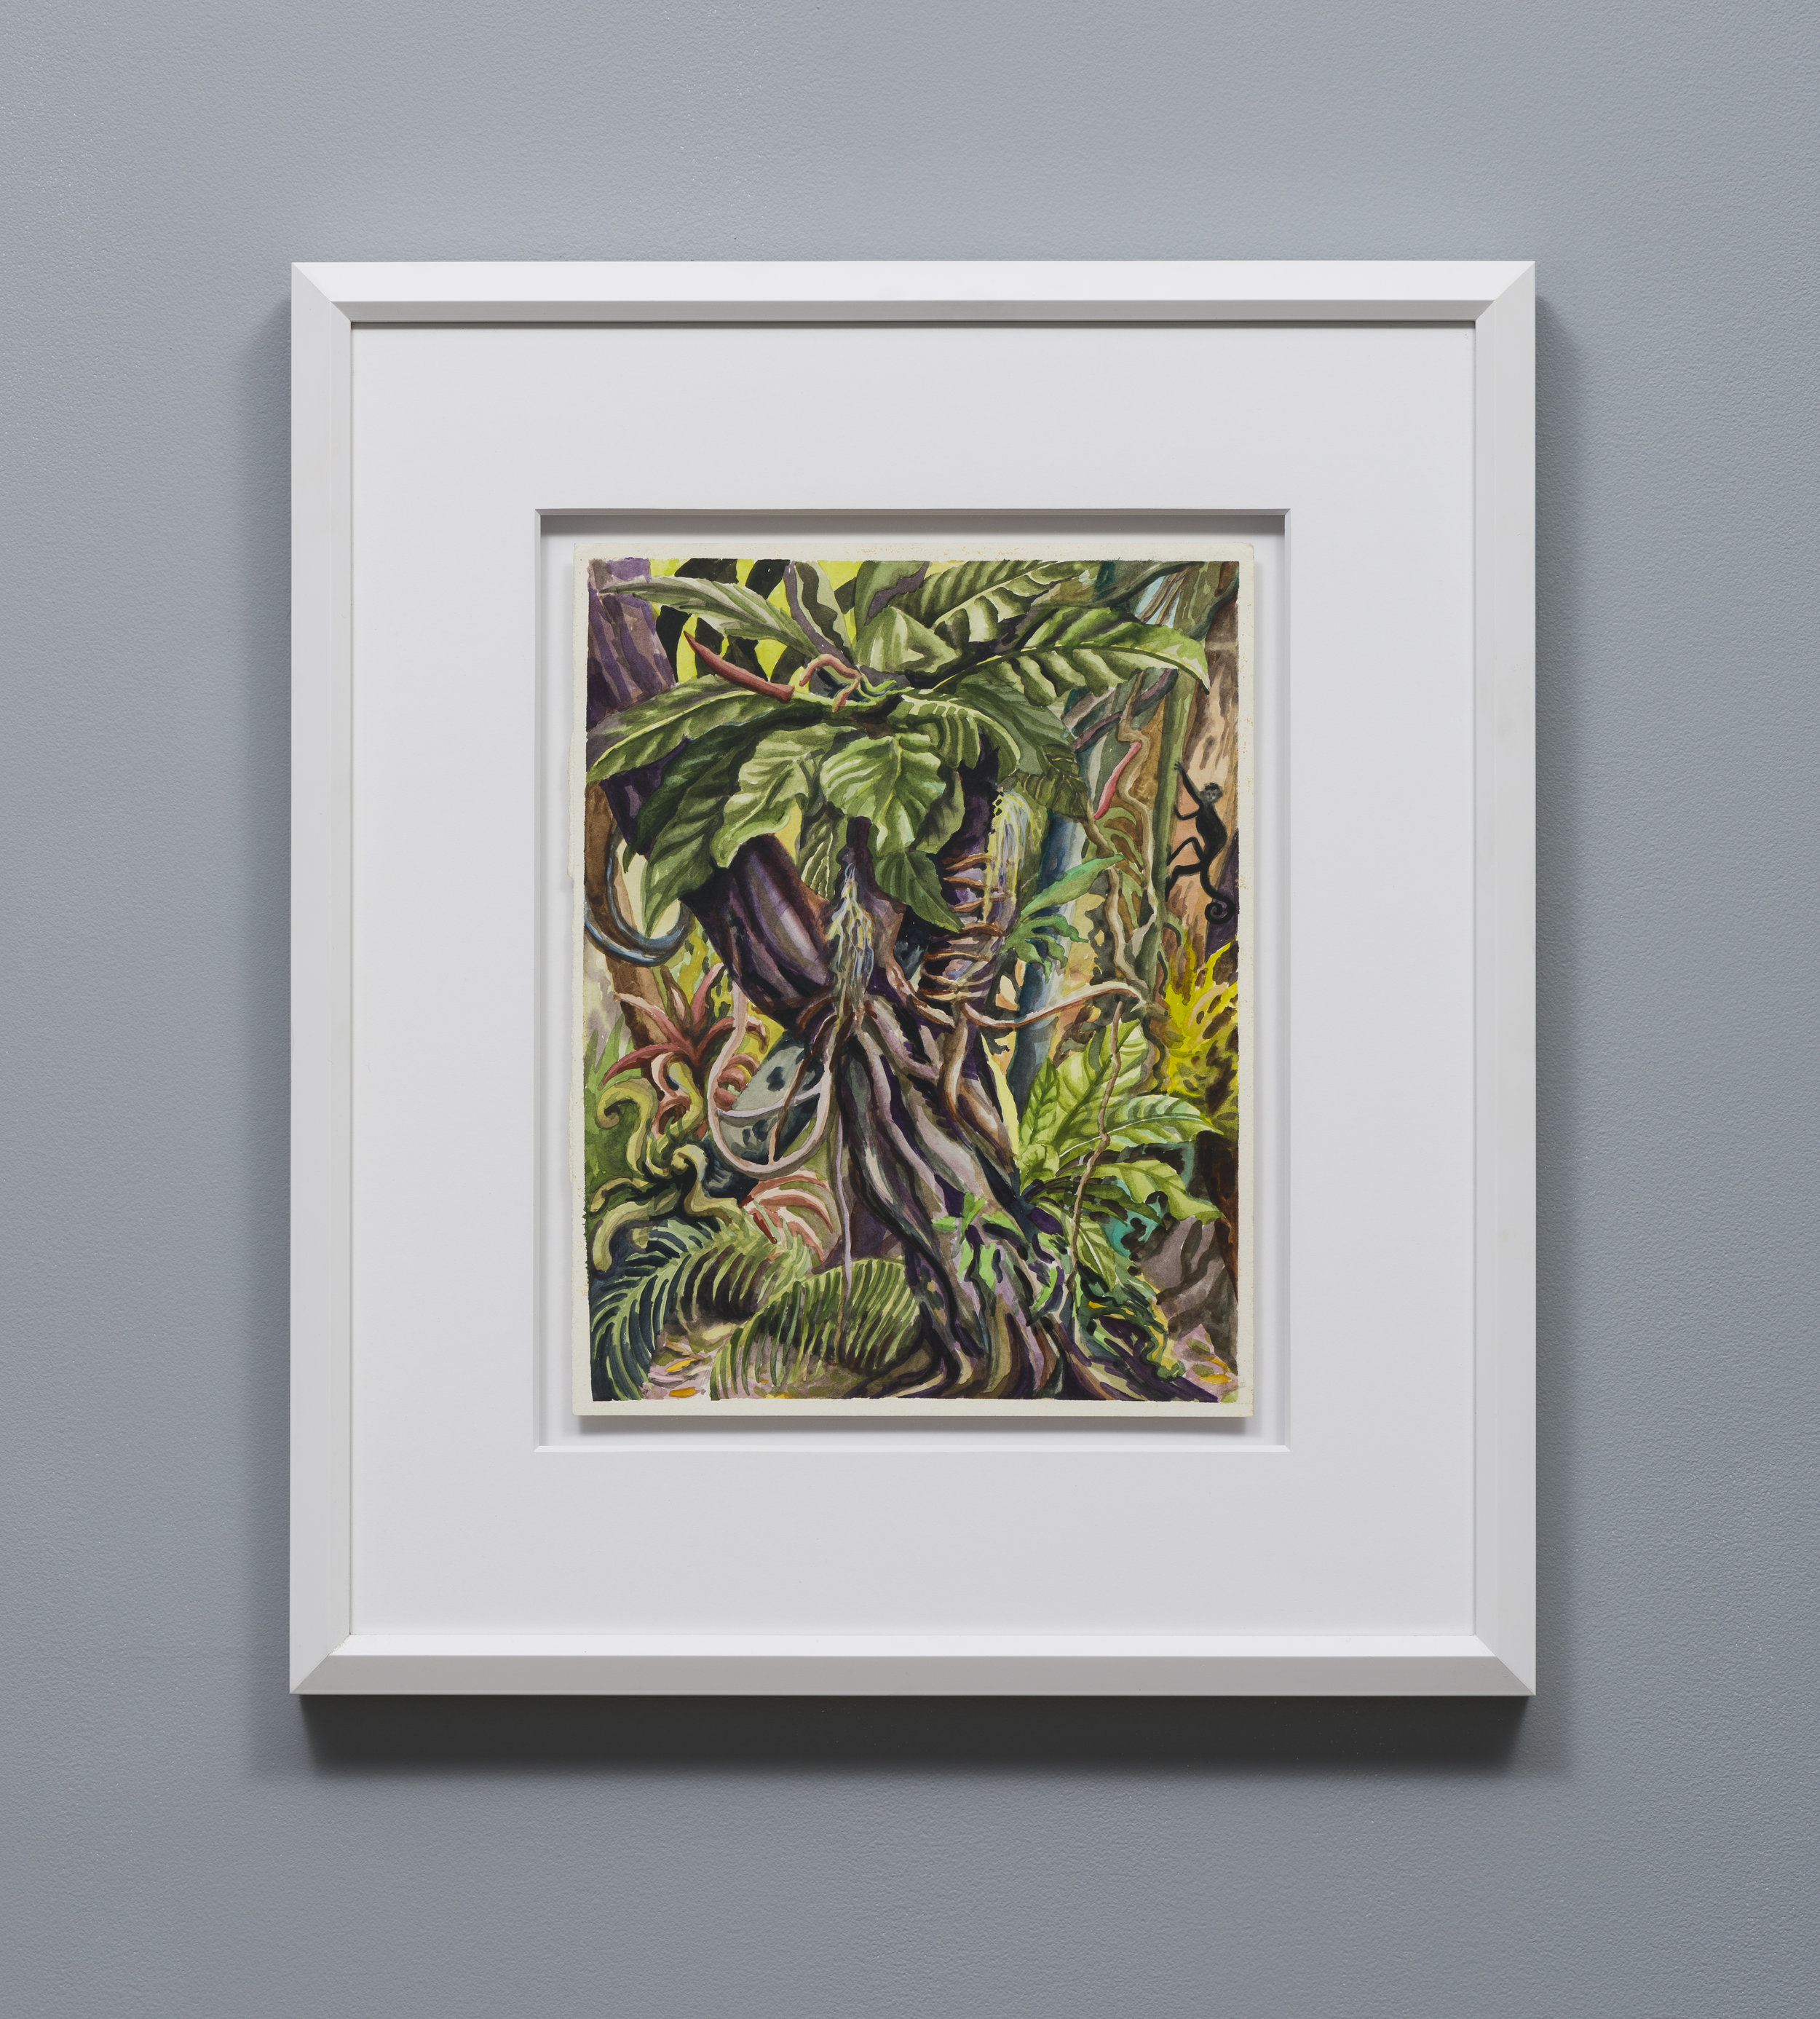   Suzan Pitt  Arbol Grande del Biotopo     1989 Watercolor on paper 14.75 x 11.5 inches, 24.5 x 21 inches framed 